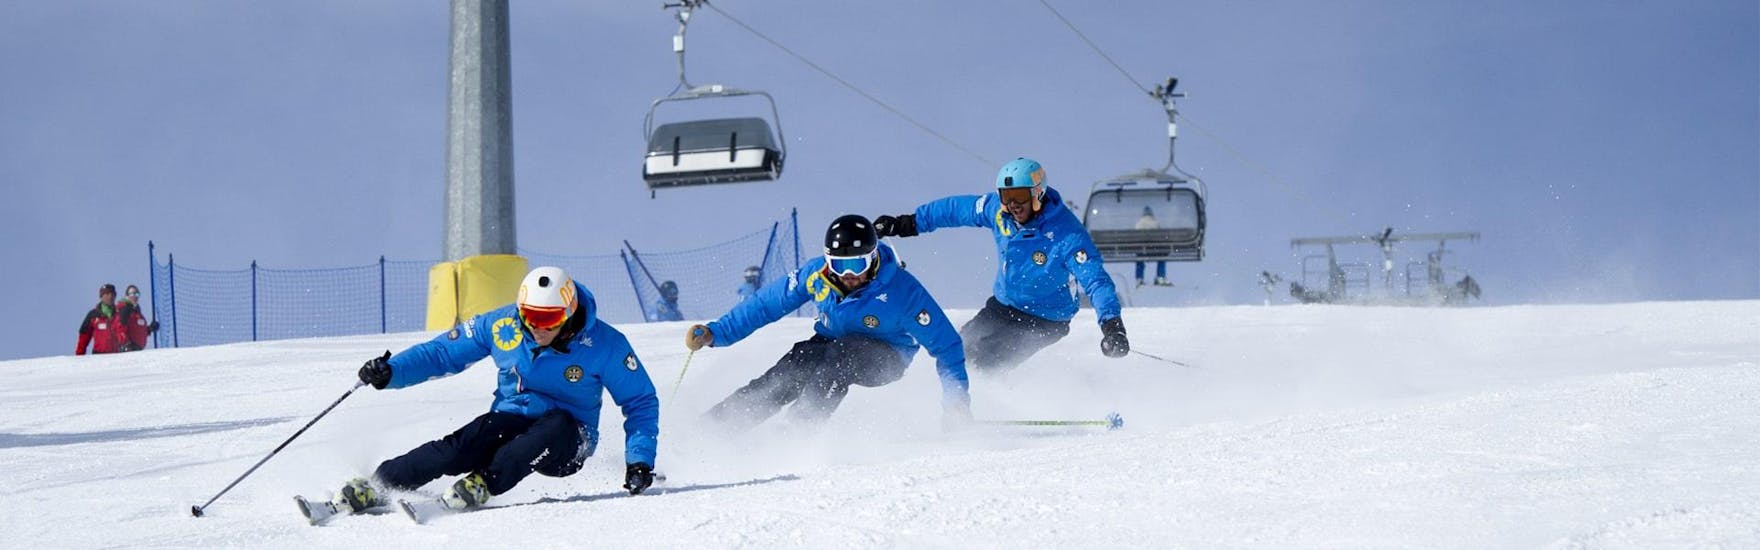 Drei Skilehrer der Skischule Scuola di Sci Azzurra Livigno fahren beim Skikurs für Erwachsene - Alle Levels in Formation die Piste hinunter, wobei sie die richtige Skitechnik demonstrieren.